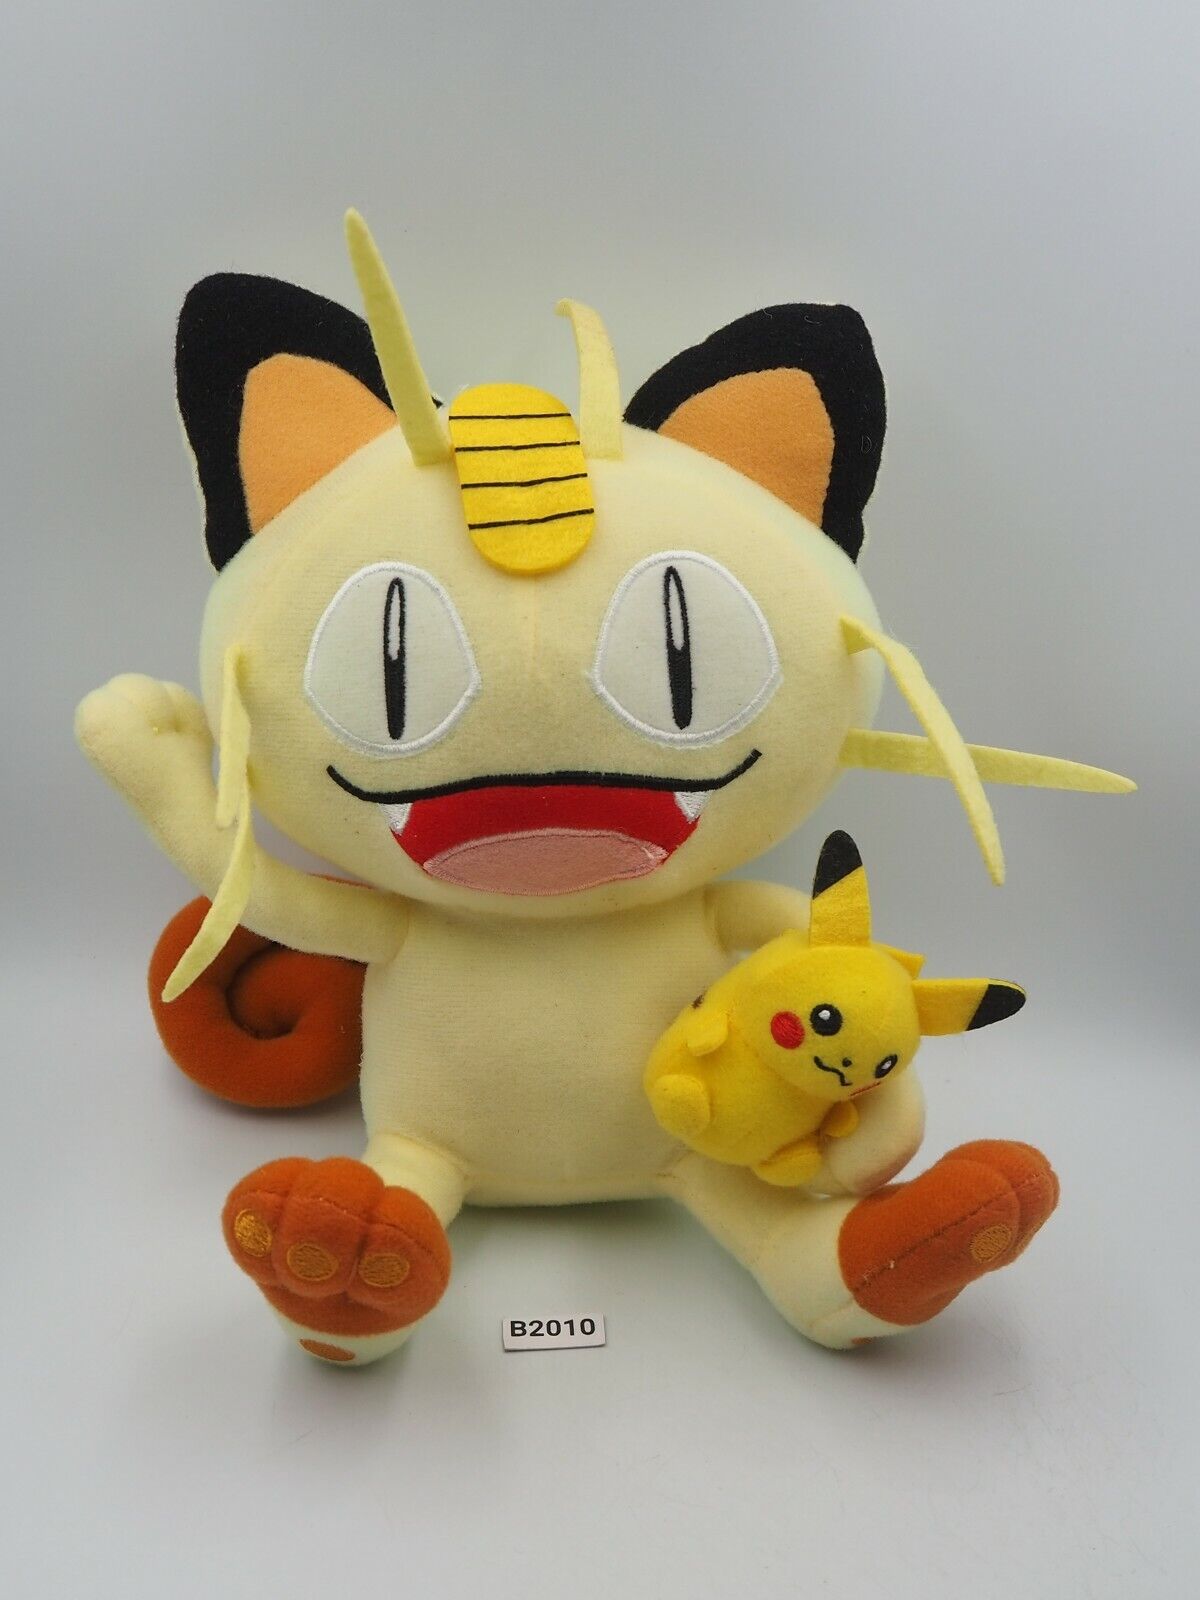 Meowth Pikachu B2010 Pokemon Center Lottery Prize 2012 Plush 9\